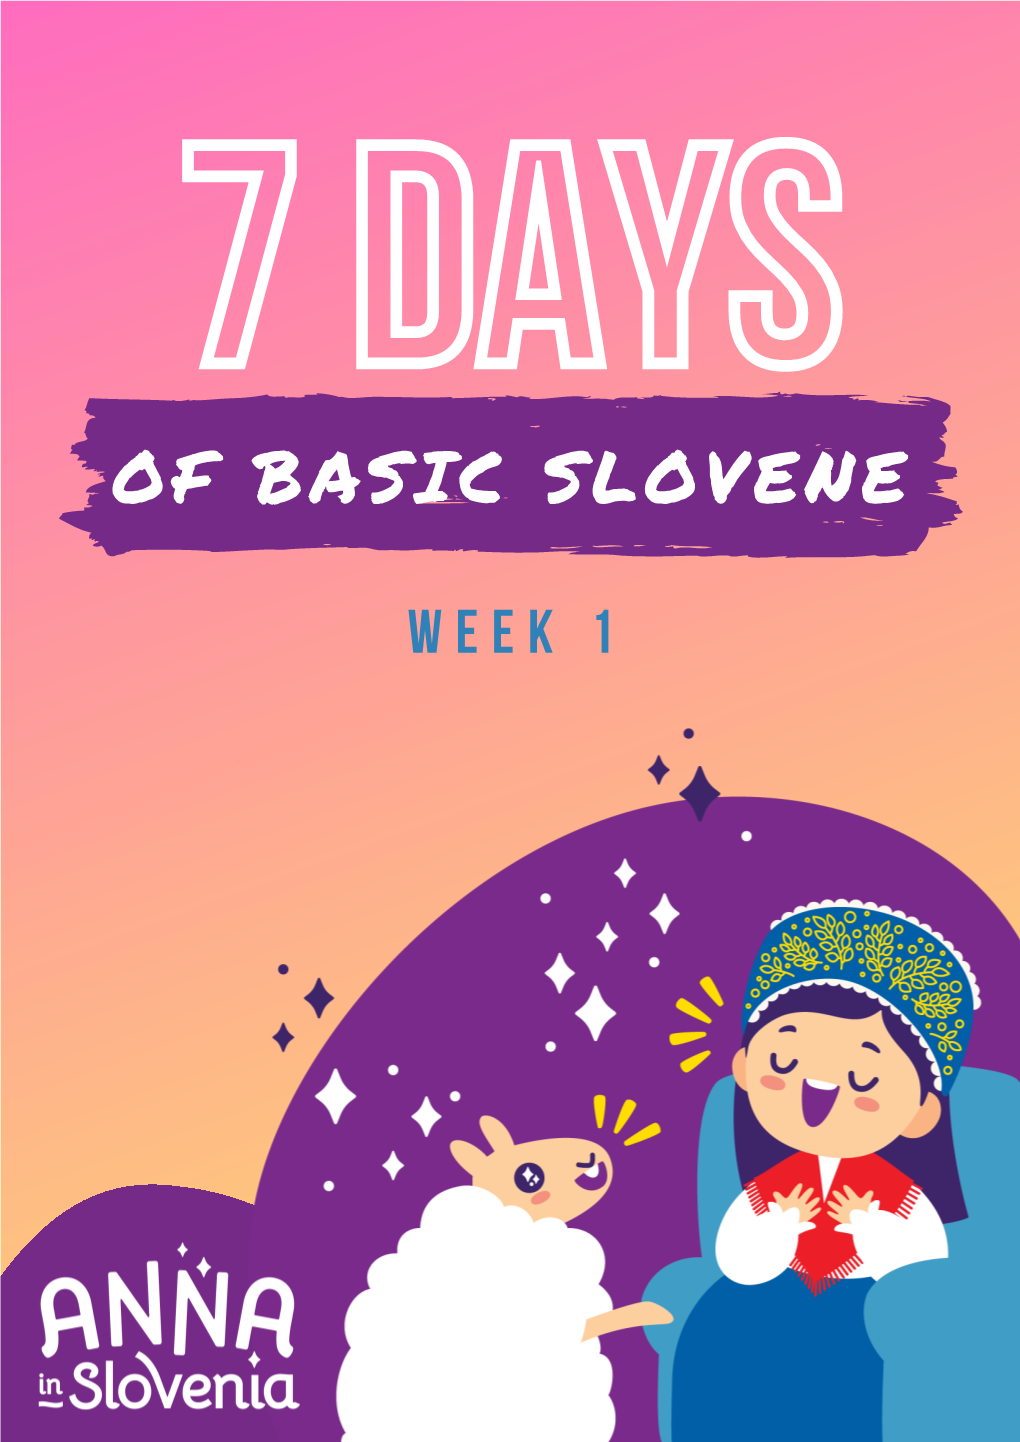 Of Basic Slovene